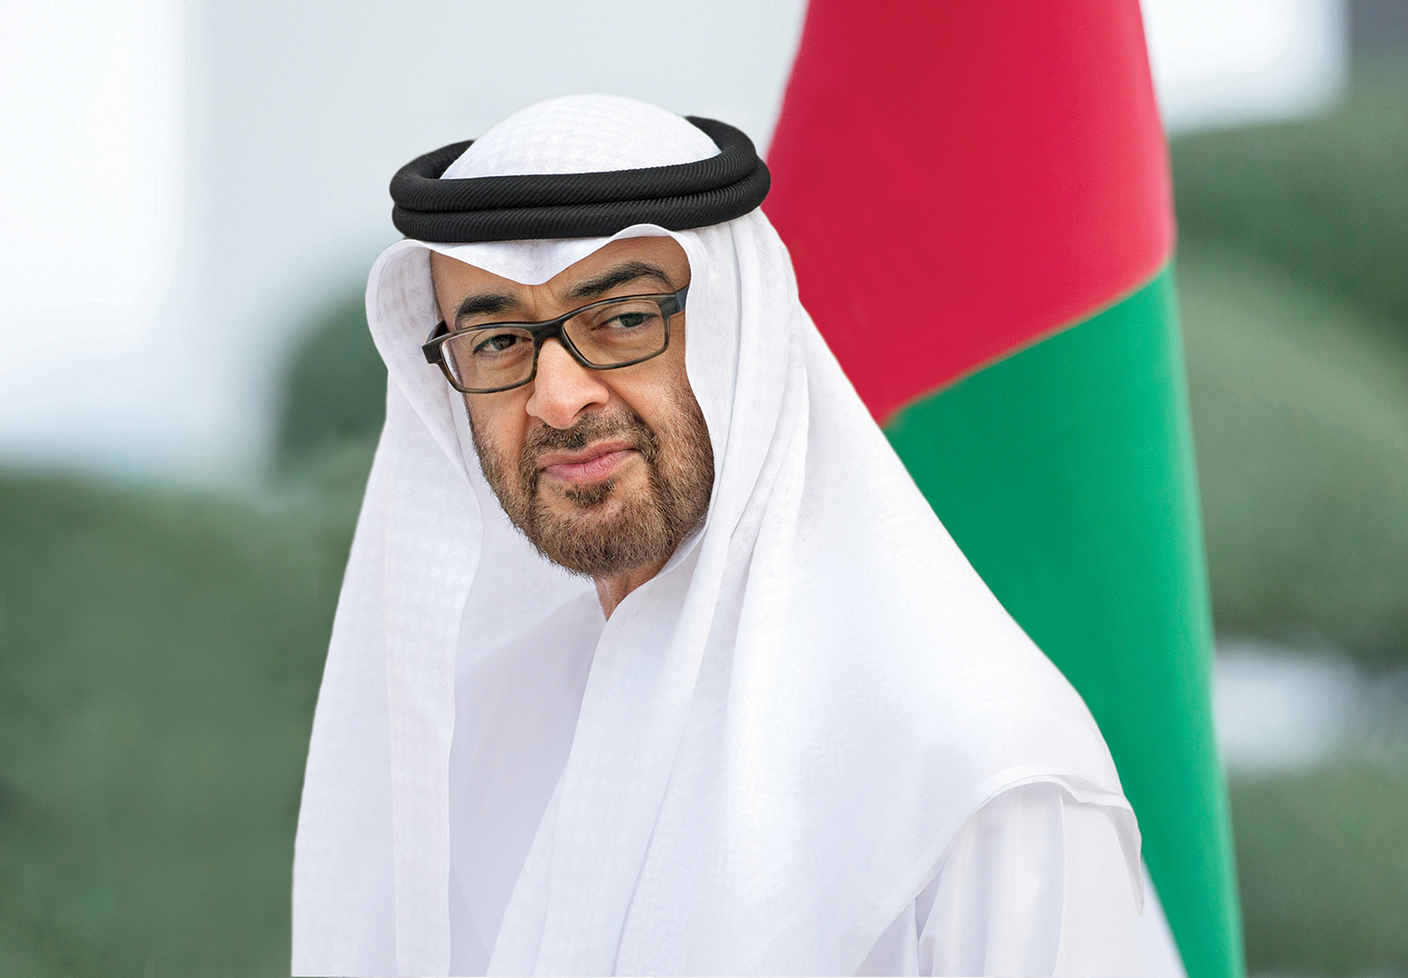 محمد بن زايد: توقيع الإمارات "إعلان كيغالي" يأتي في إطار مساهمتها المتواصلة لمكافحة هذه الأمراض